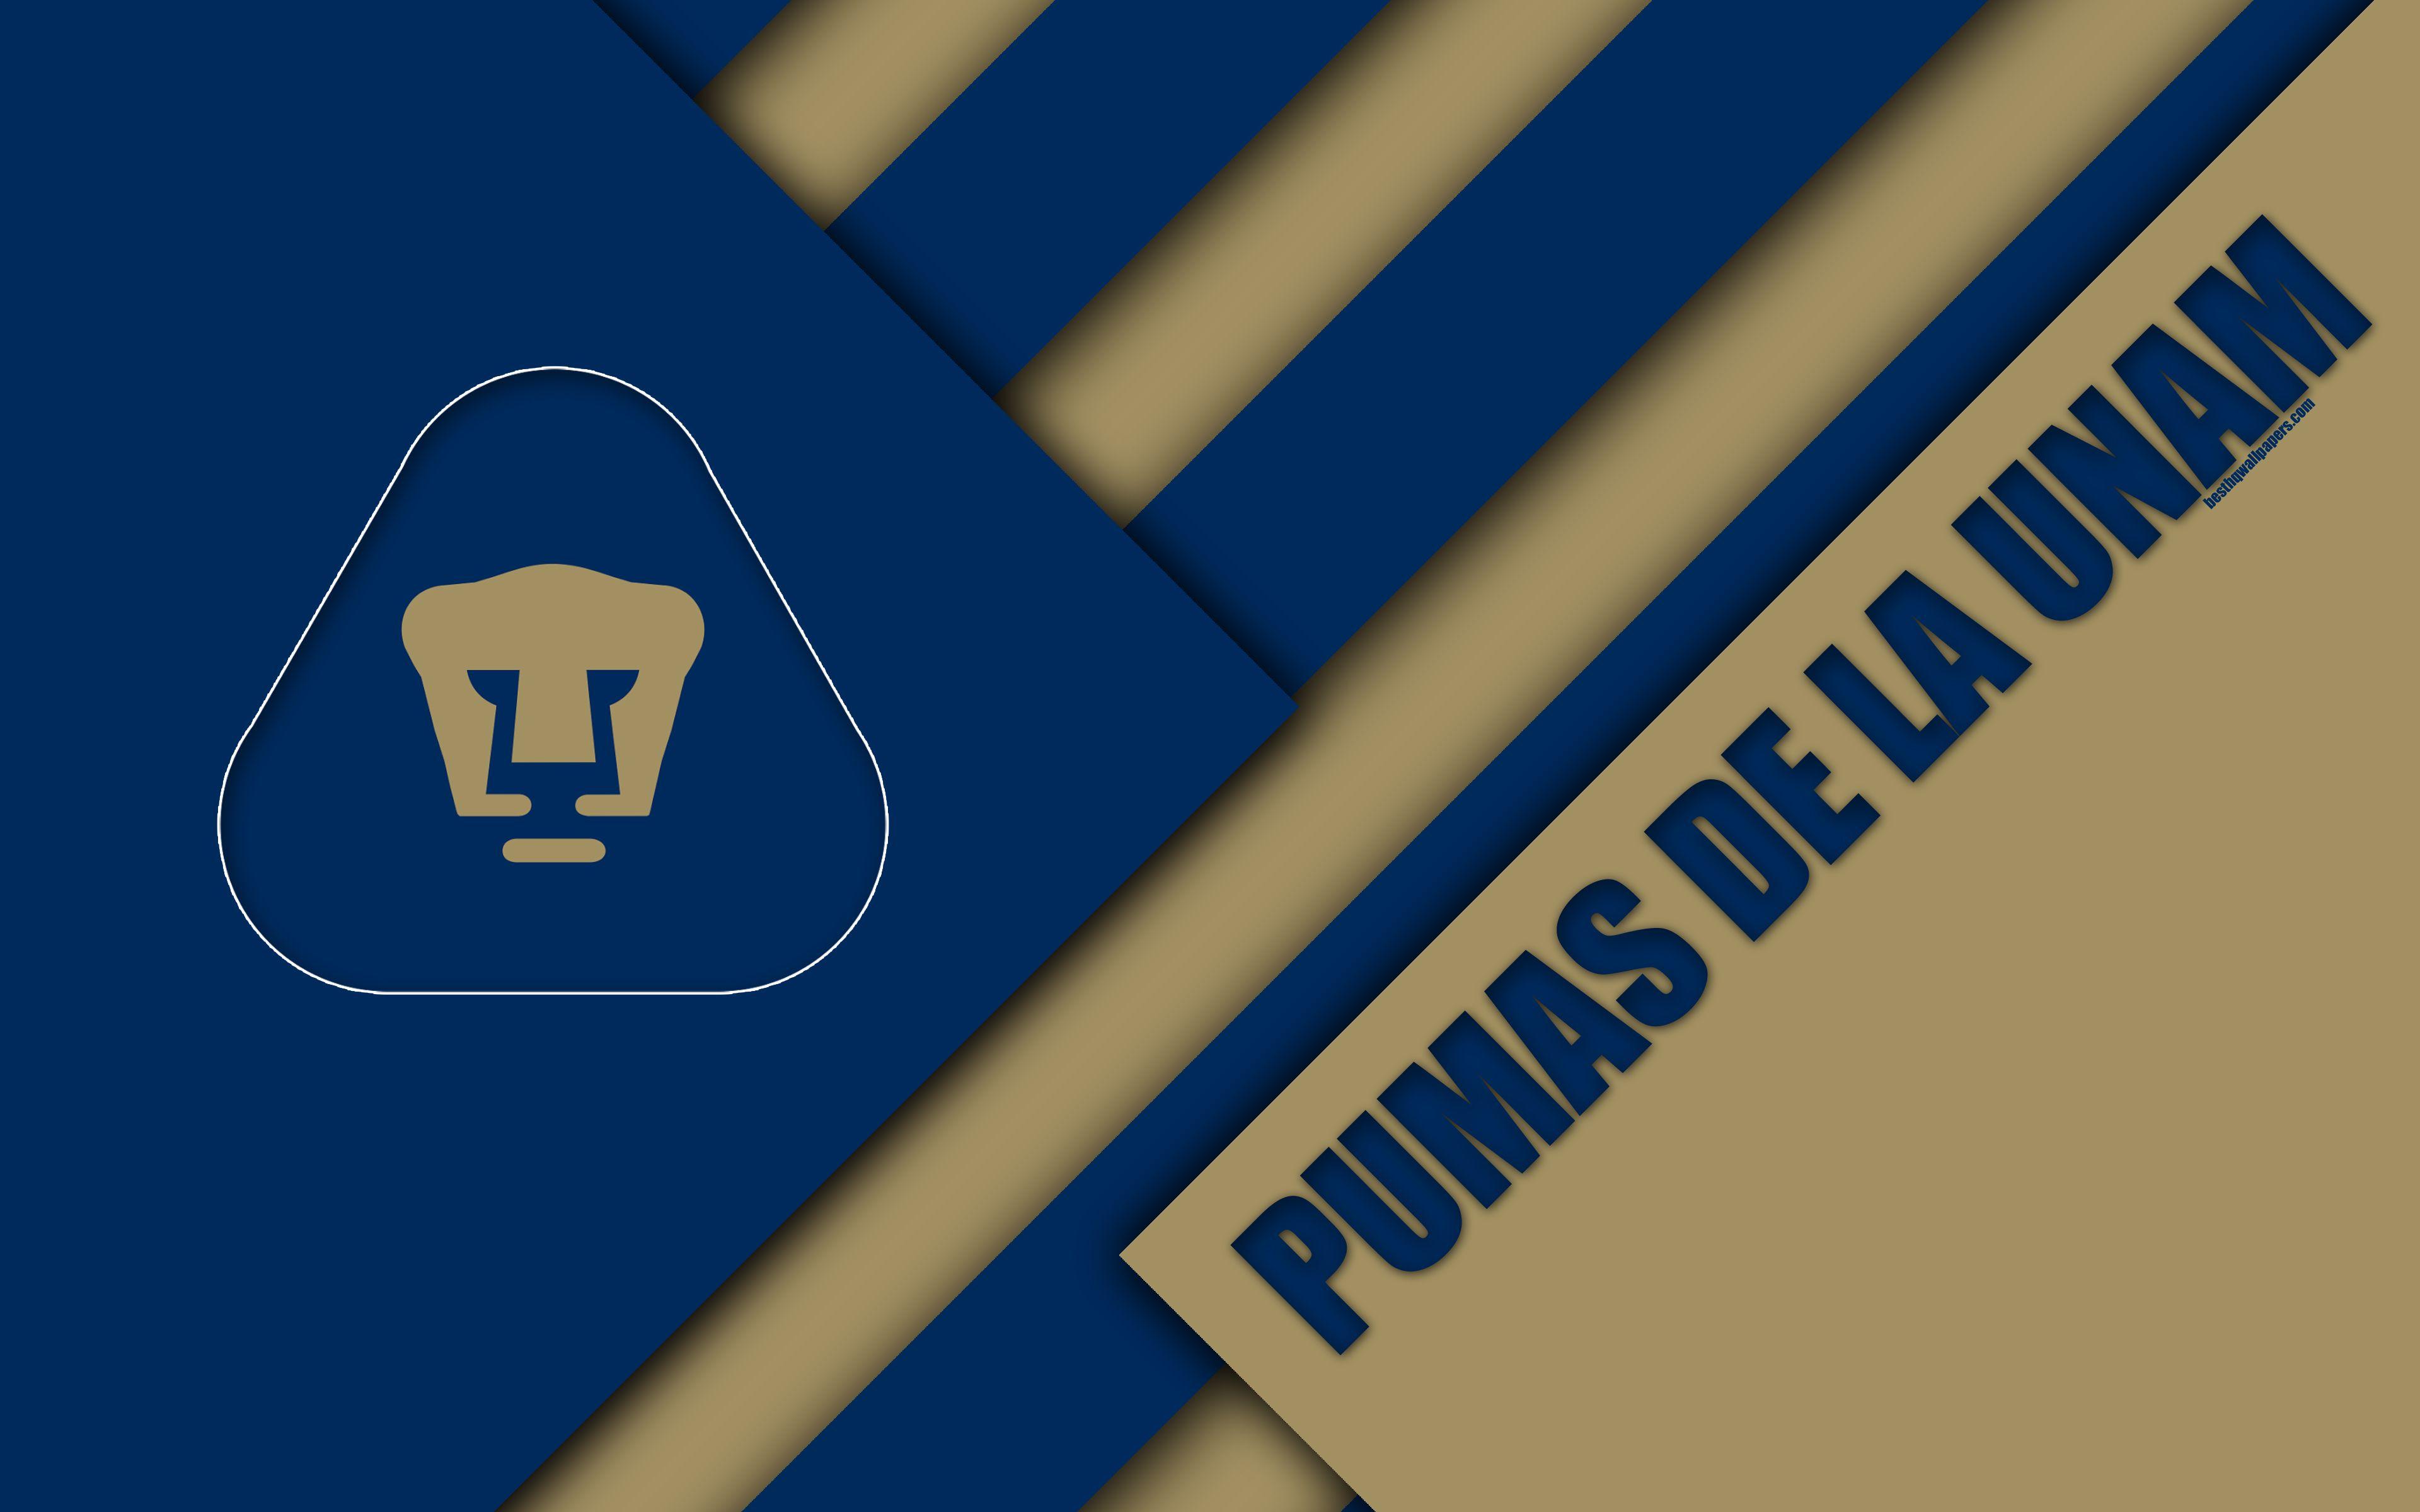 Download wallpaper Pumas de la UNAM, Club Universidad Nacional, 4K